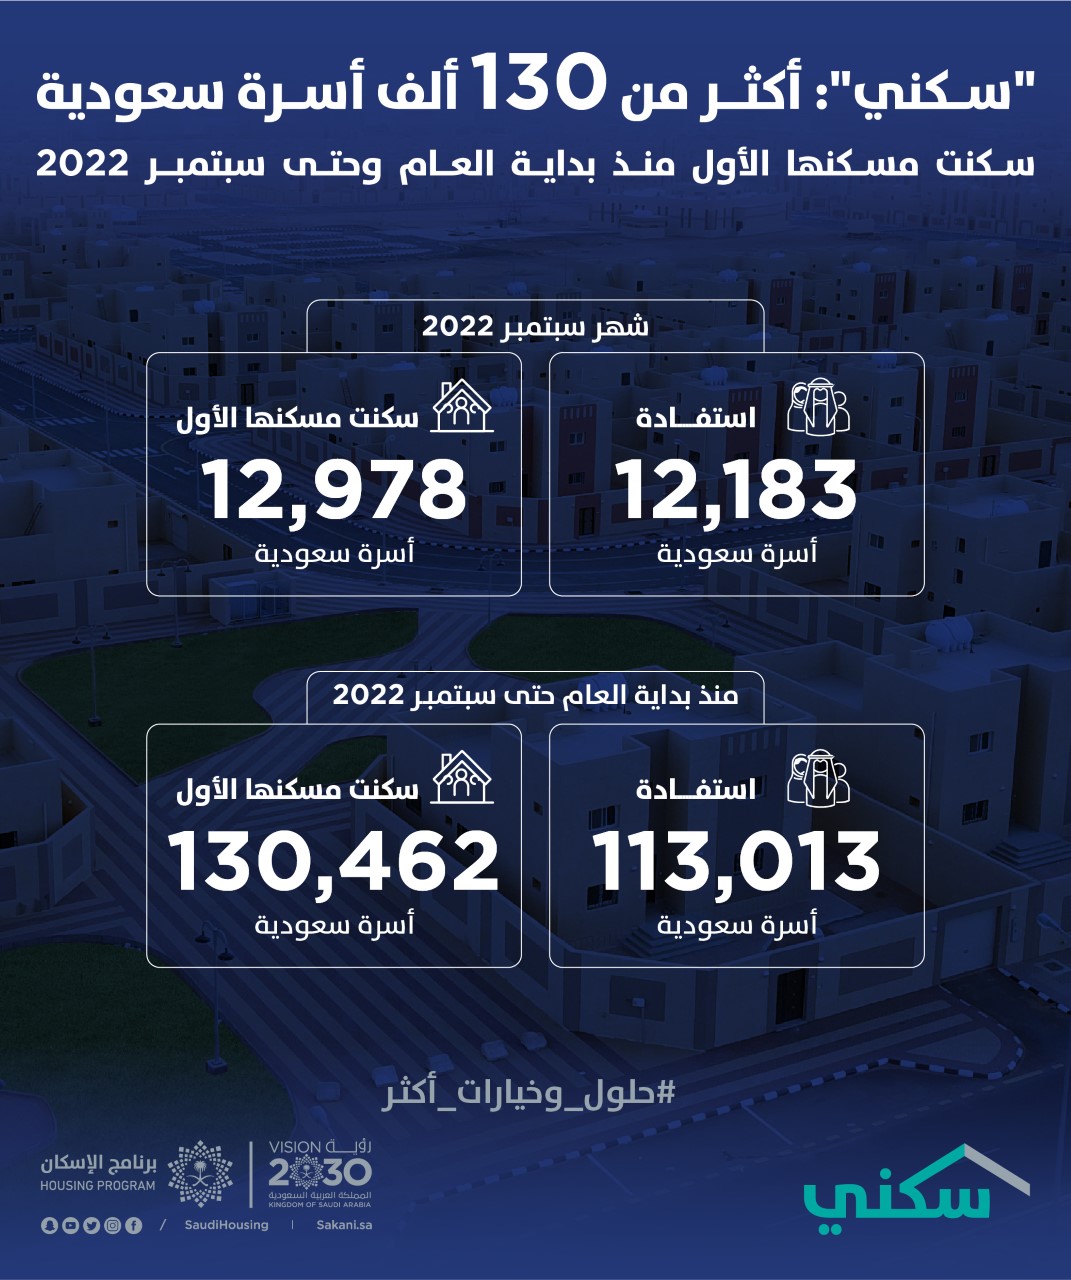 “سكني”: أكثر من 130 ألف أسرة سعودية سكنت مسكنها الأول منذ بداية العام